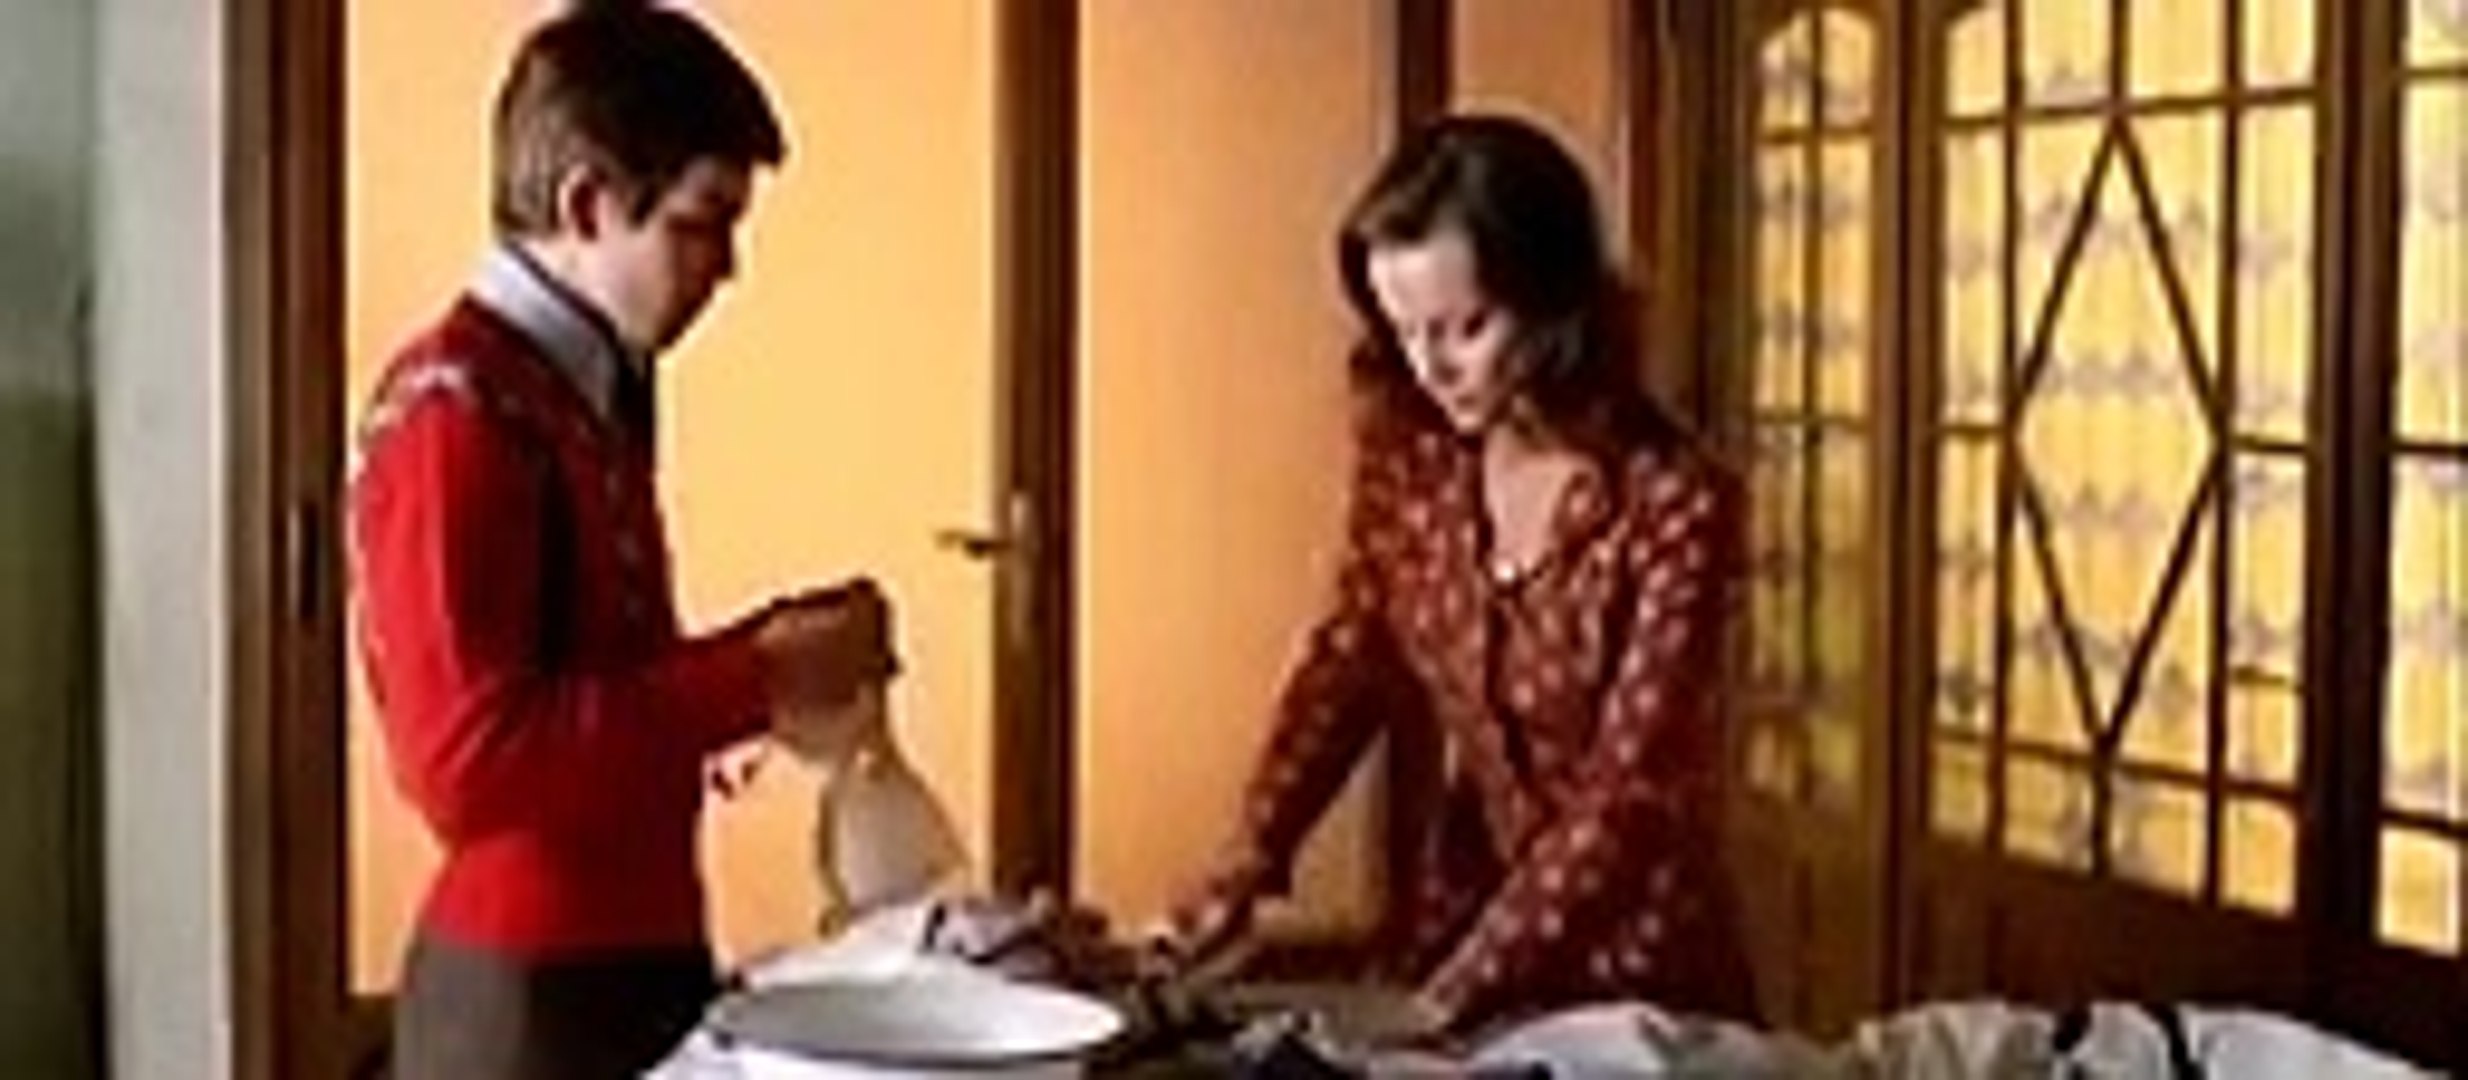 Мачеха сводная сестра и пасынка. Малиция / коварство / Malizia (1973). Исчезновение.2o17 драма.